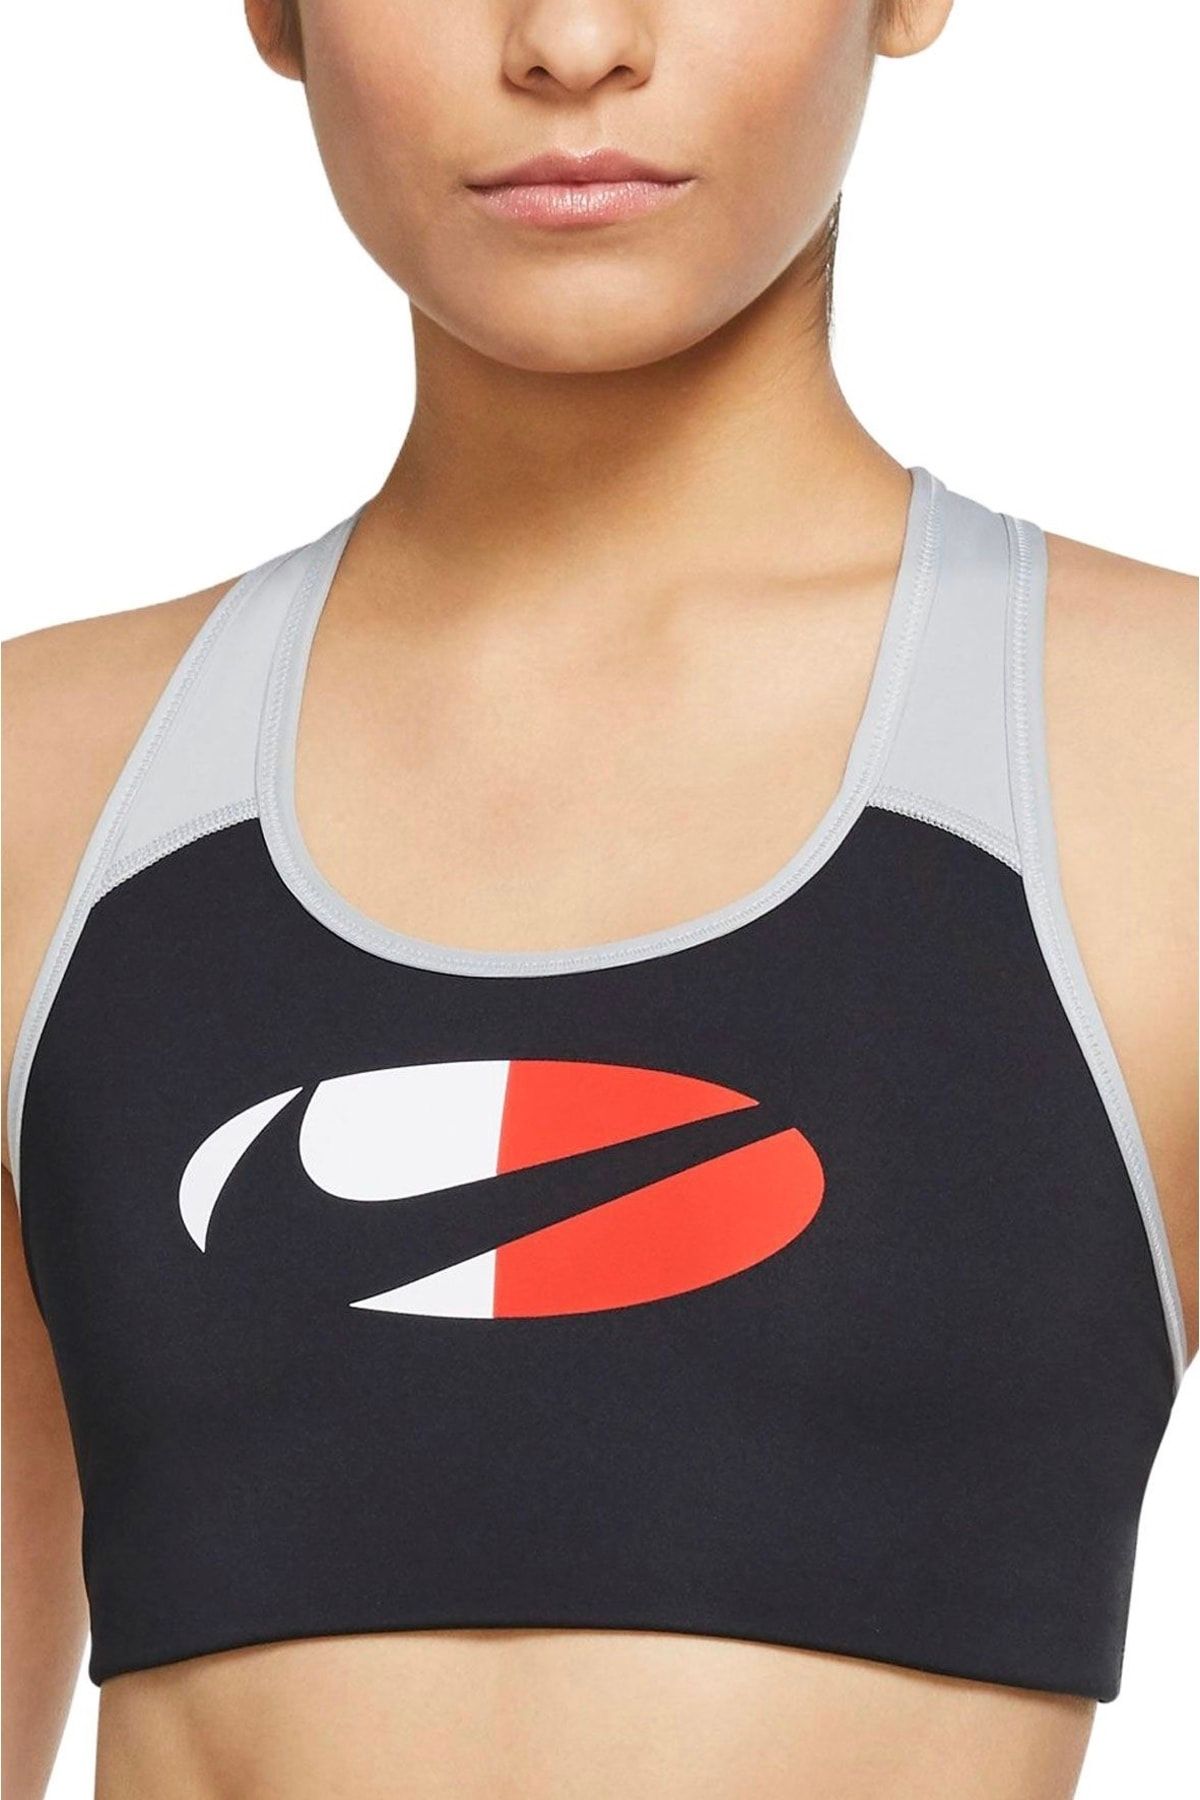 Nike Dri-fit Swoosh Rhinestone Women's Bra Sports Bra - Black Dd1458-010 -  Trendyol